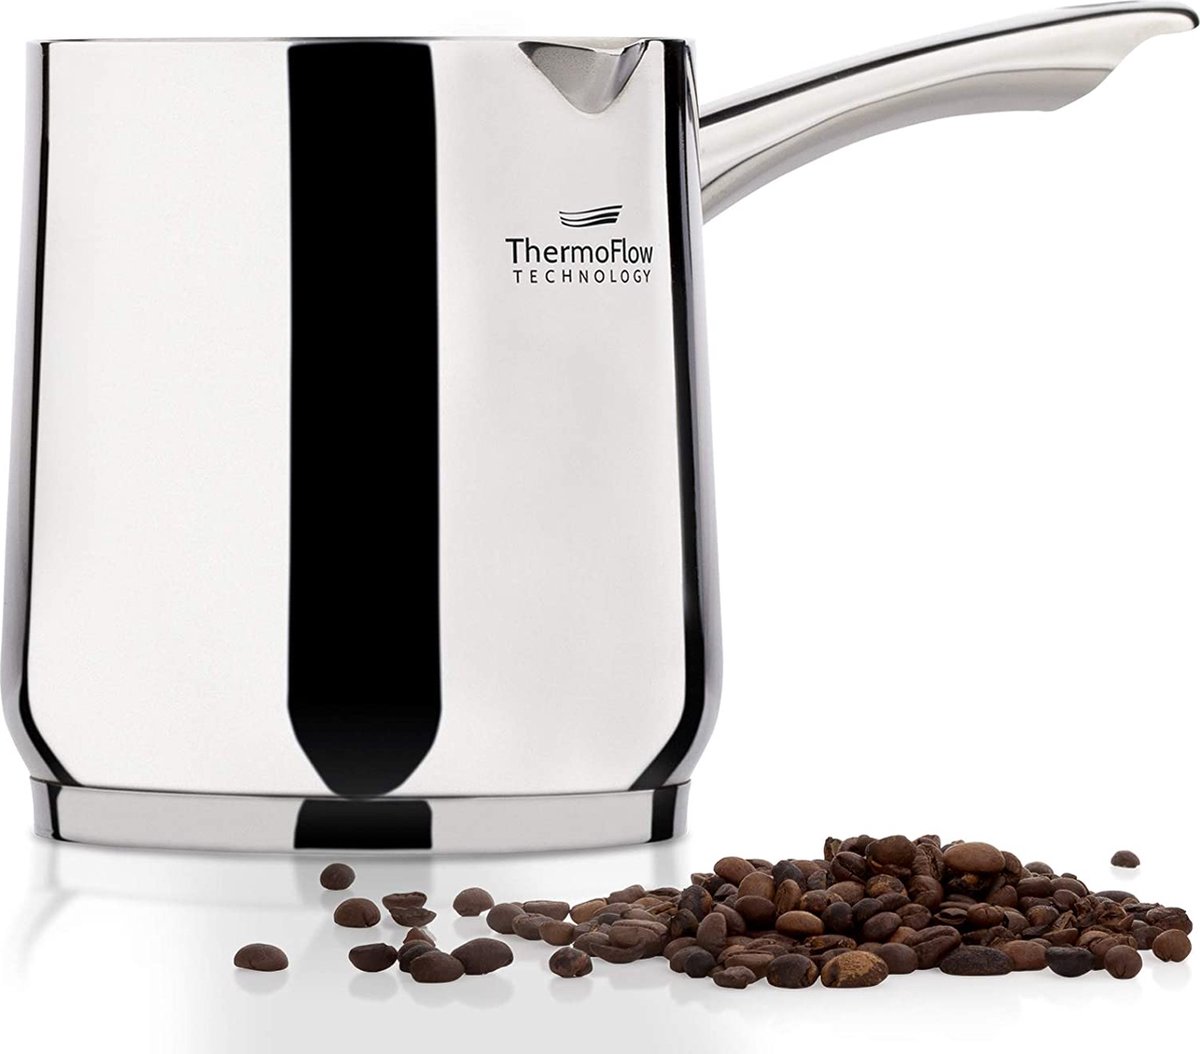 Nouveau design machine à café Turc acier inoxydable avec poignée